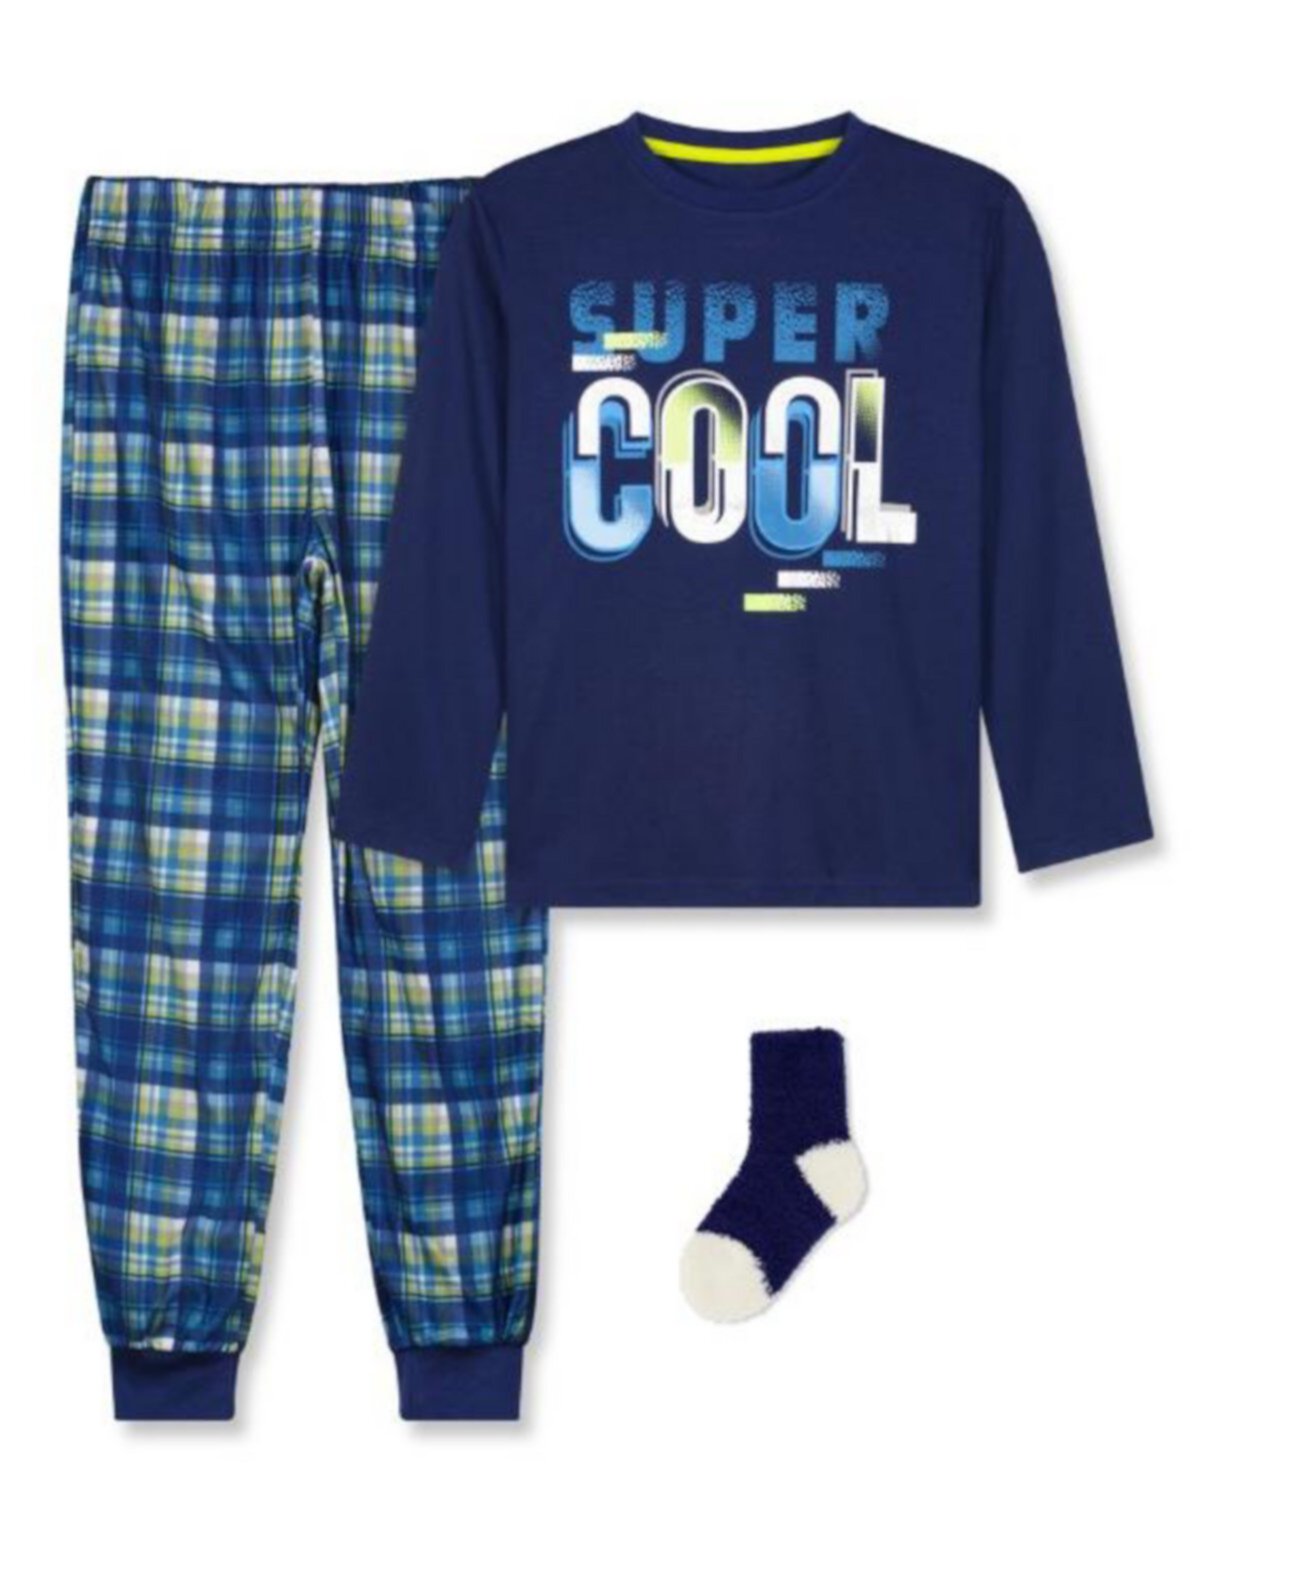 Топ с длинными рукавами, пижама и носки Big Boys, комплект из 3 предметов Max & Olivia